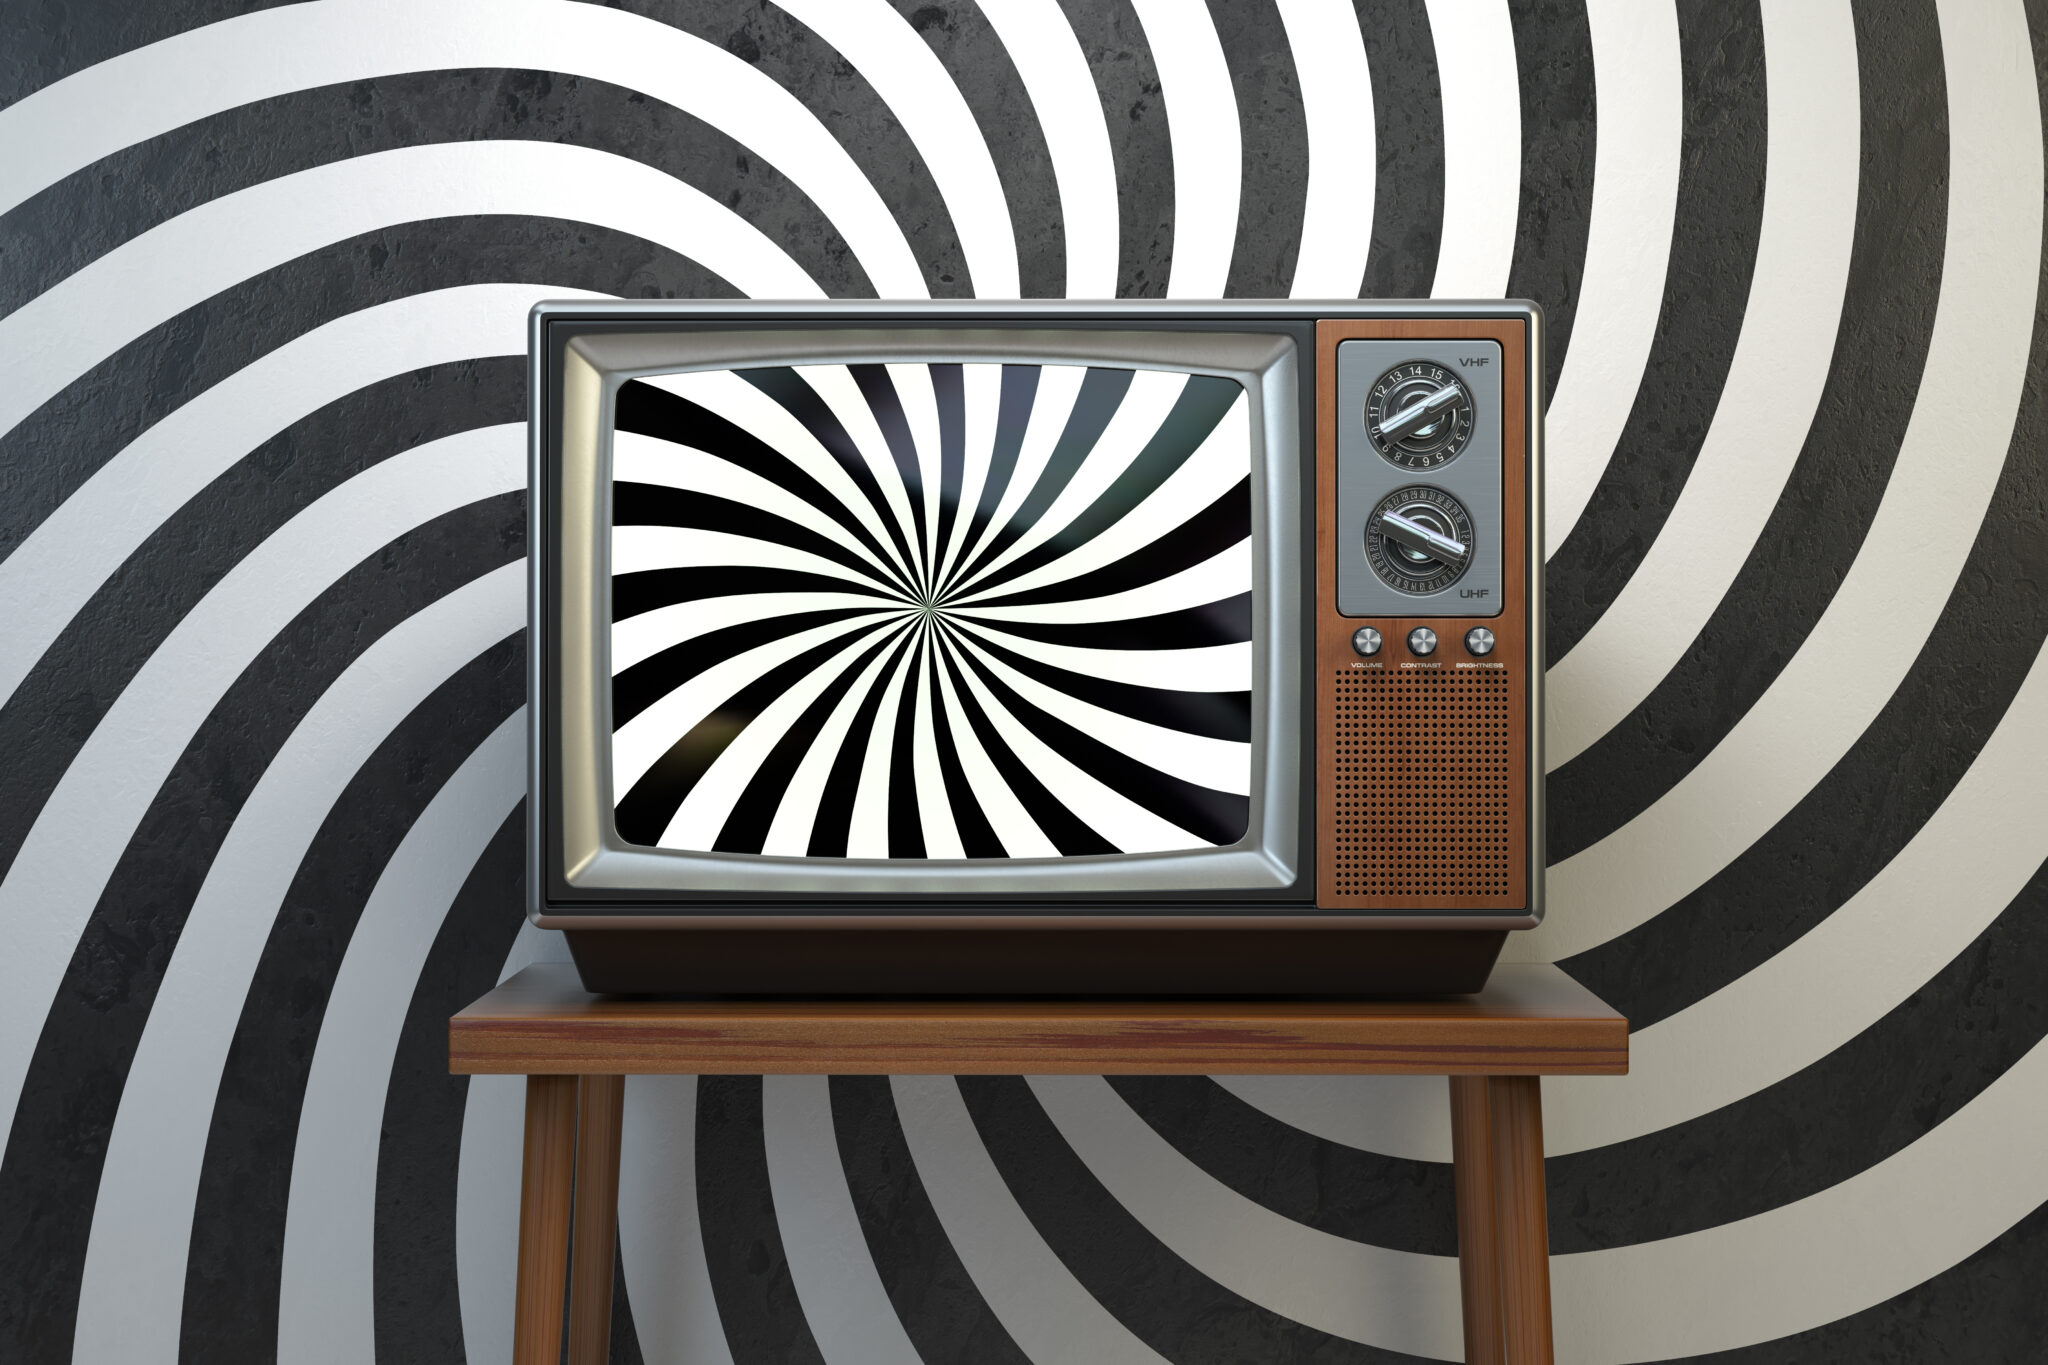 Ein Retro-Fernseher im hölzernen Rahmen mit schwarzweiss-hypnotischer Spirale im Bild und drumherum.